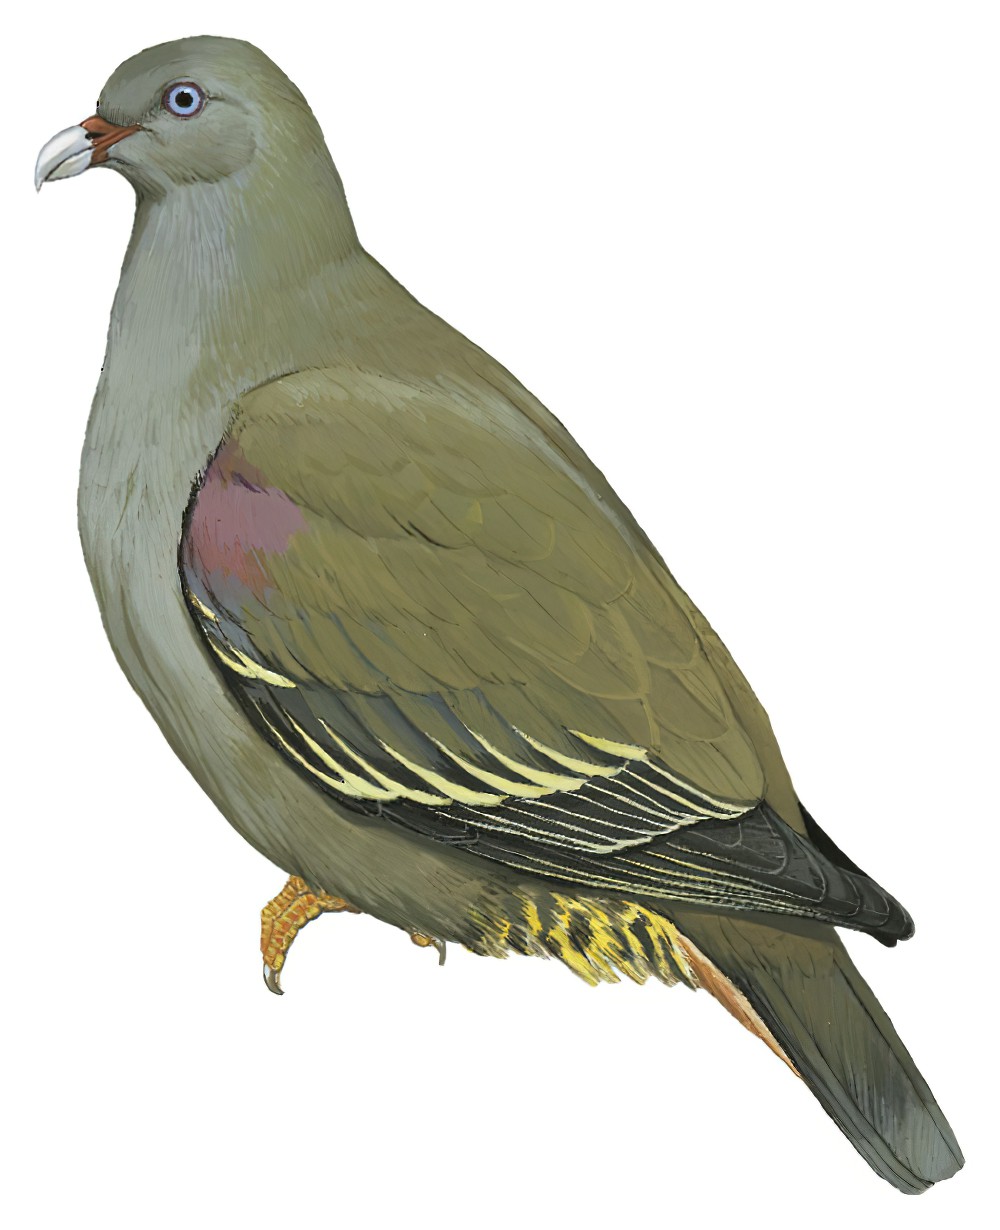 Sao Tome Green-Pigeon / Treron sanctithomae